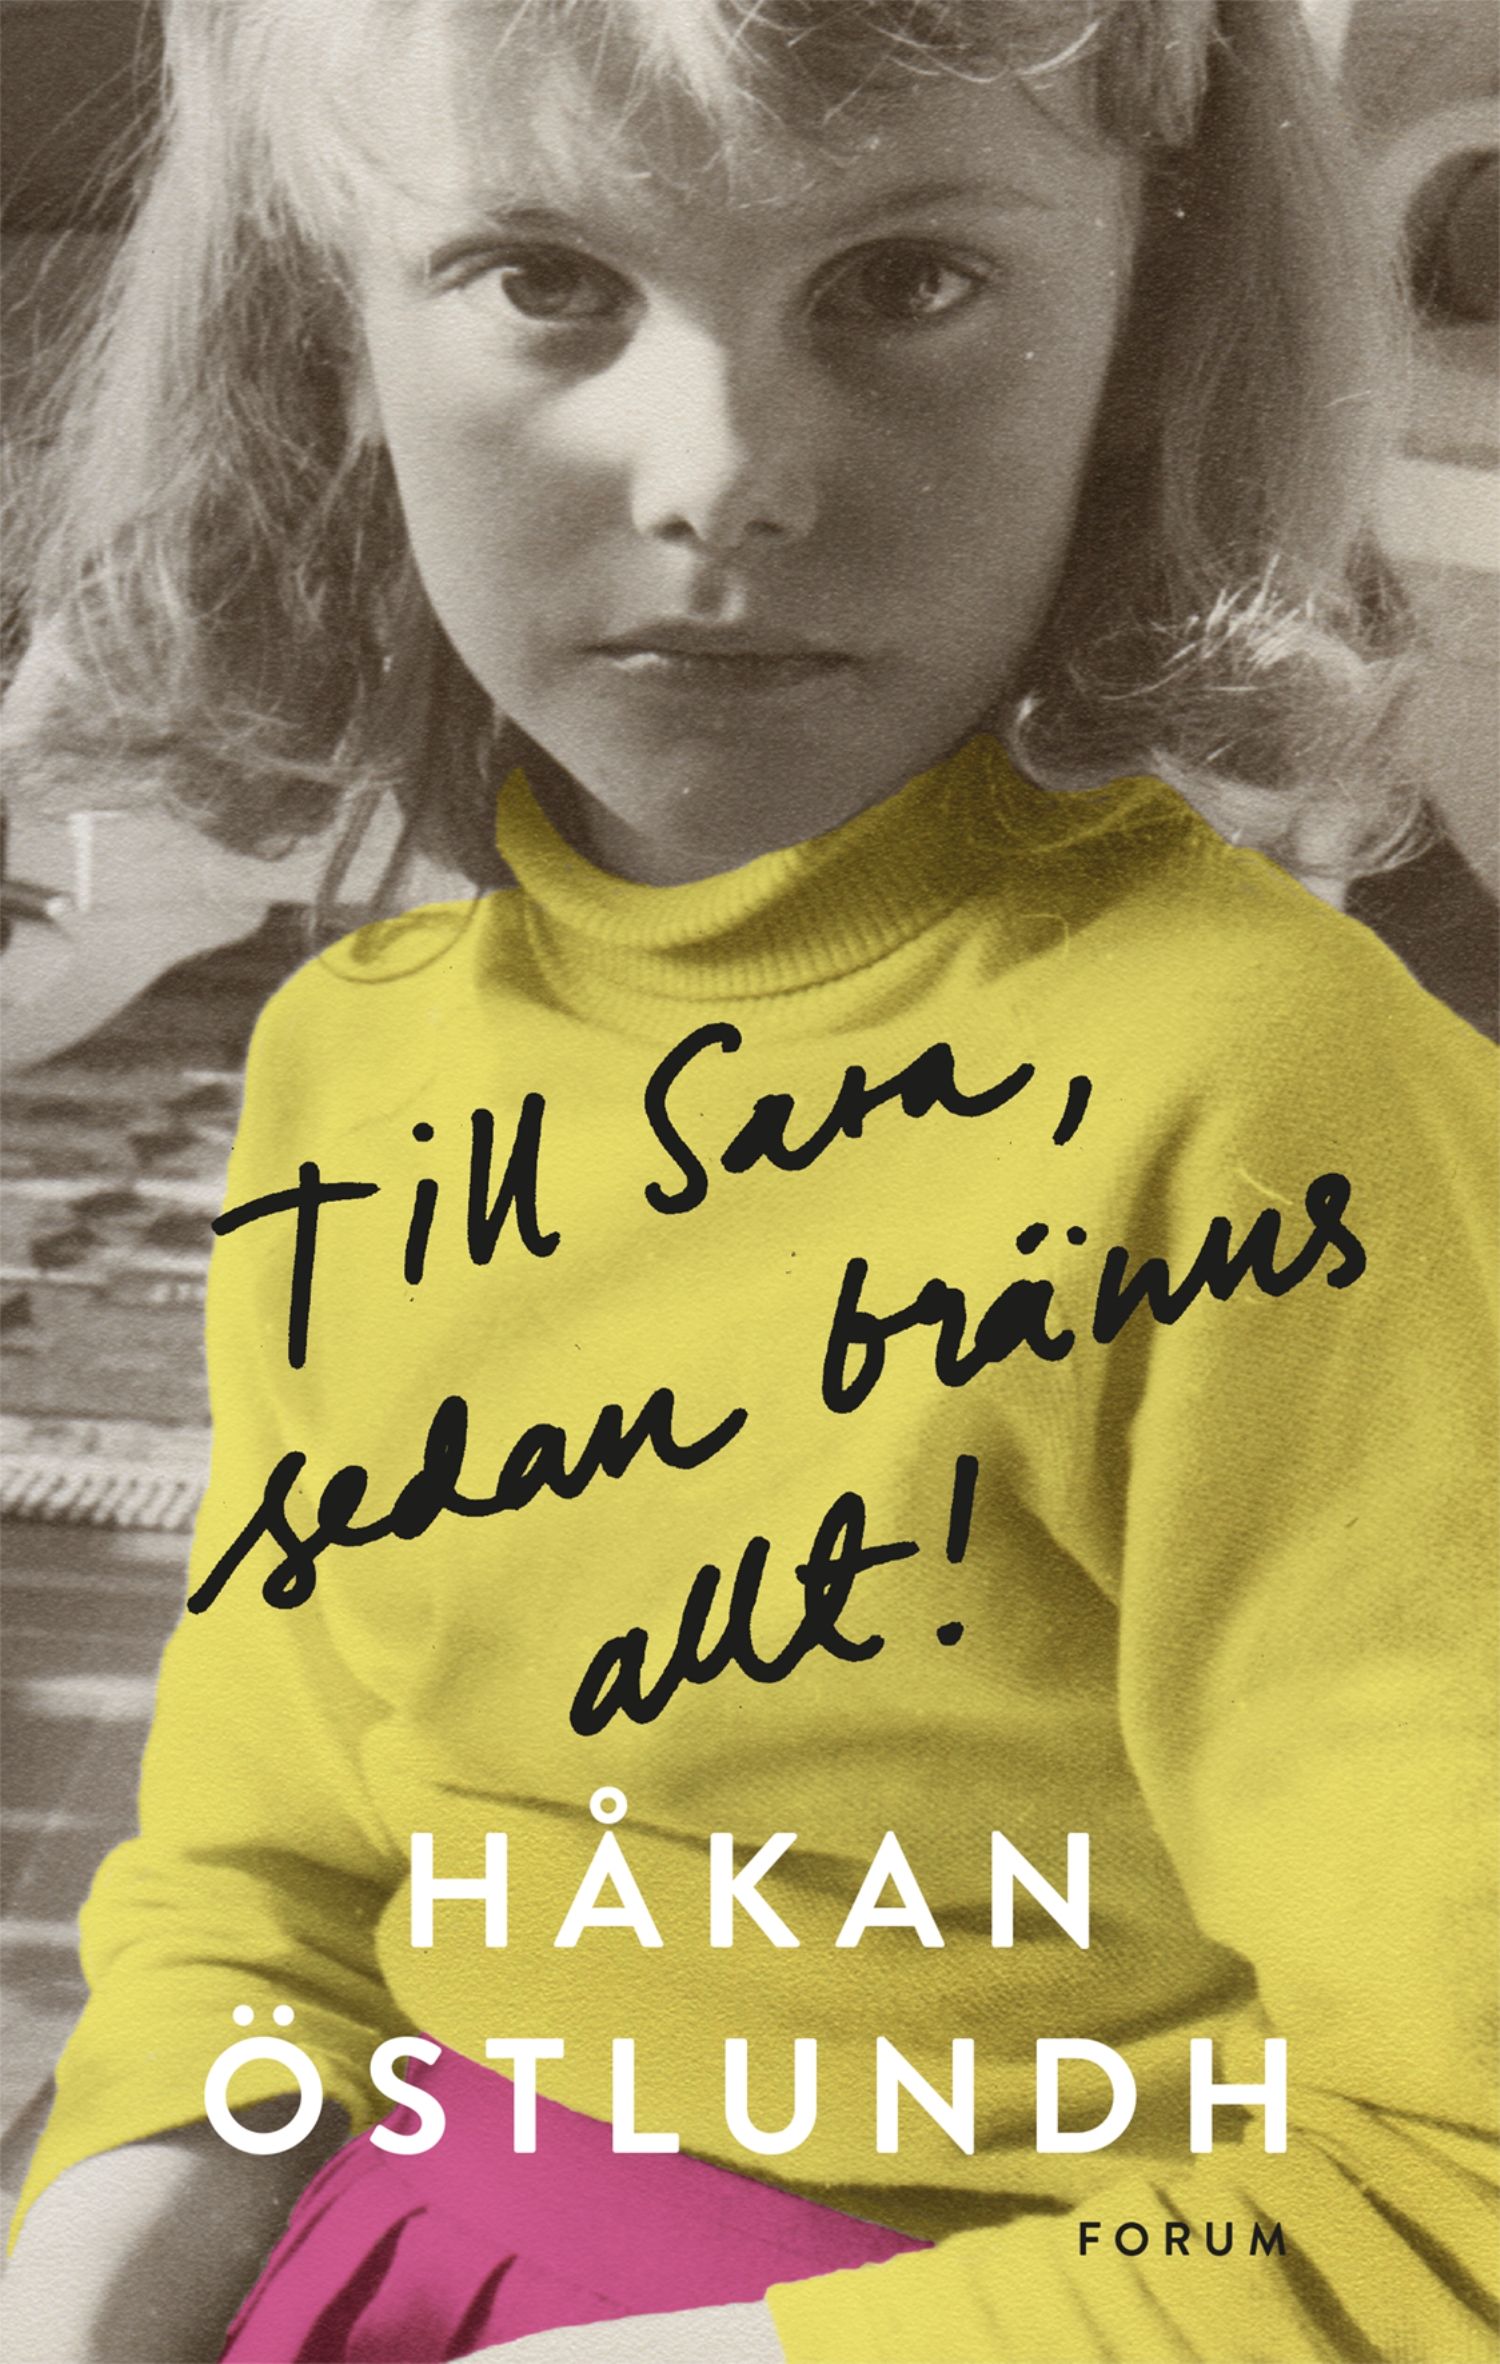 Till Sara, sedan bränns allt!, e-bog af Håkan Östlundh